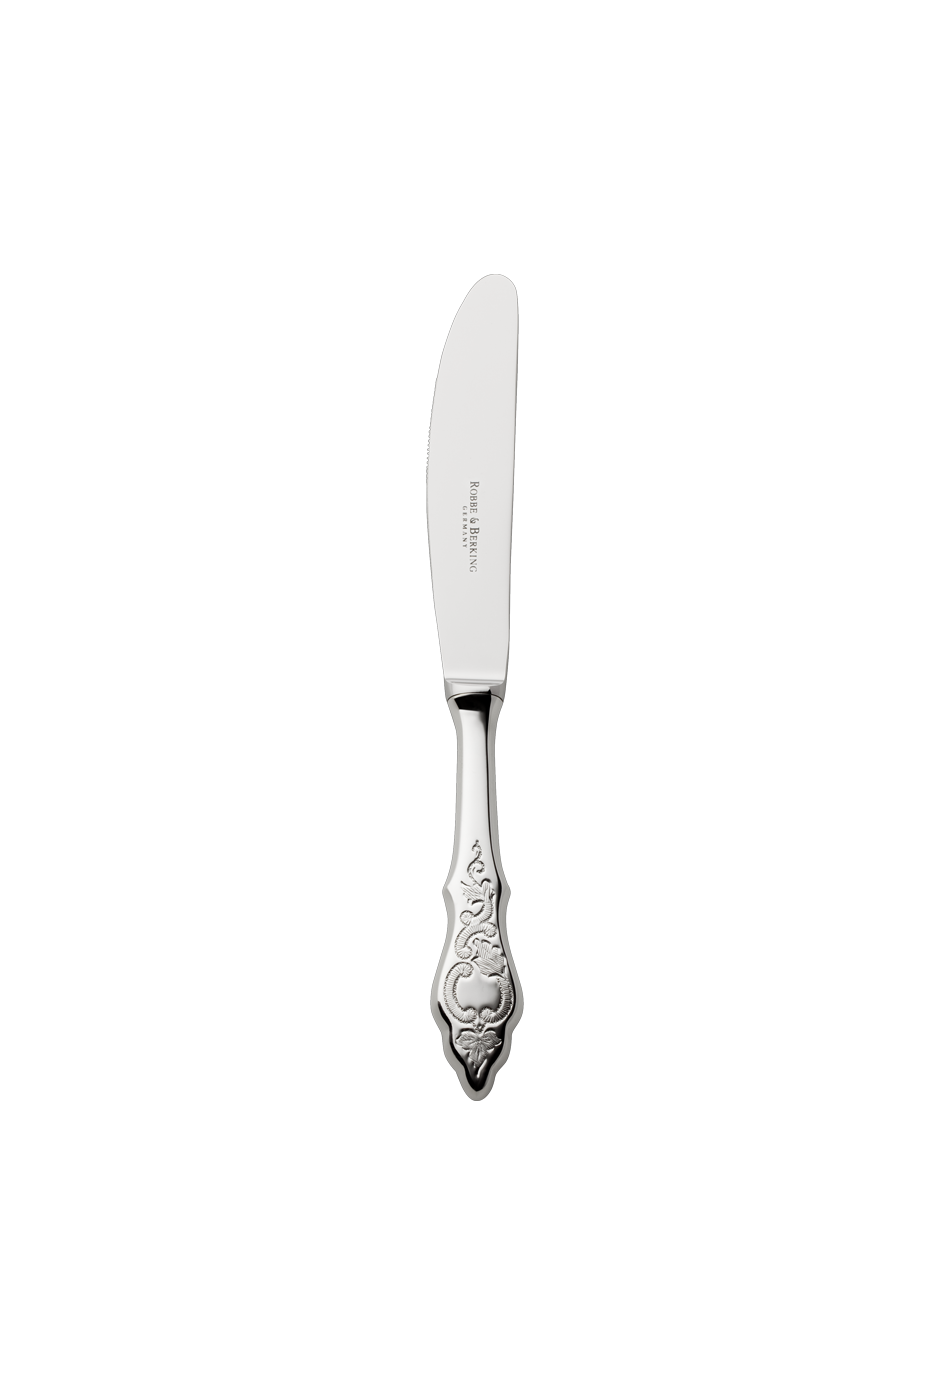 Ostfriesen Children's Knife (18/8 stainless steel)